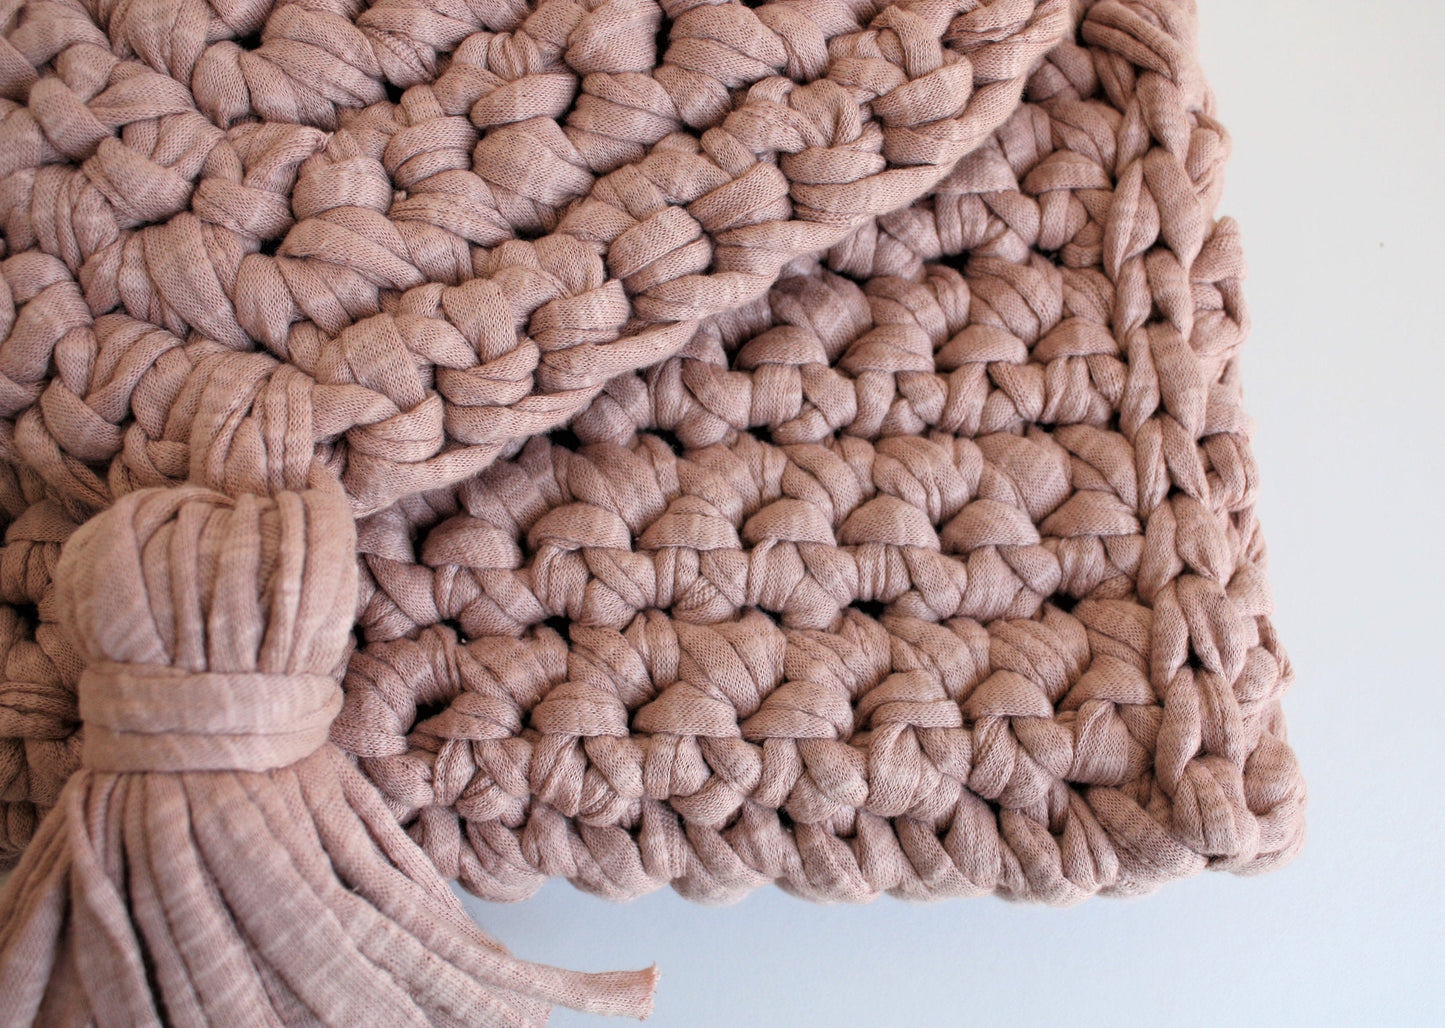 T-SHIRT YARN CLUTCH – FREE crochet pattern